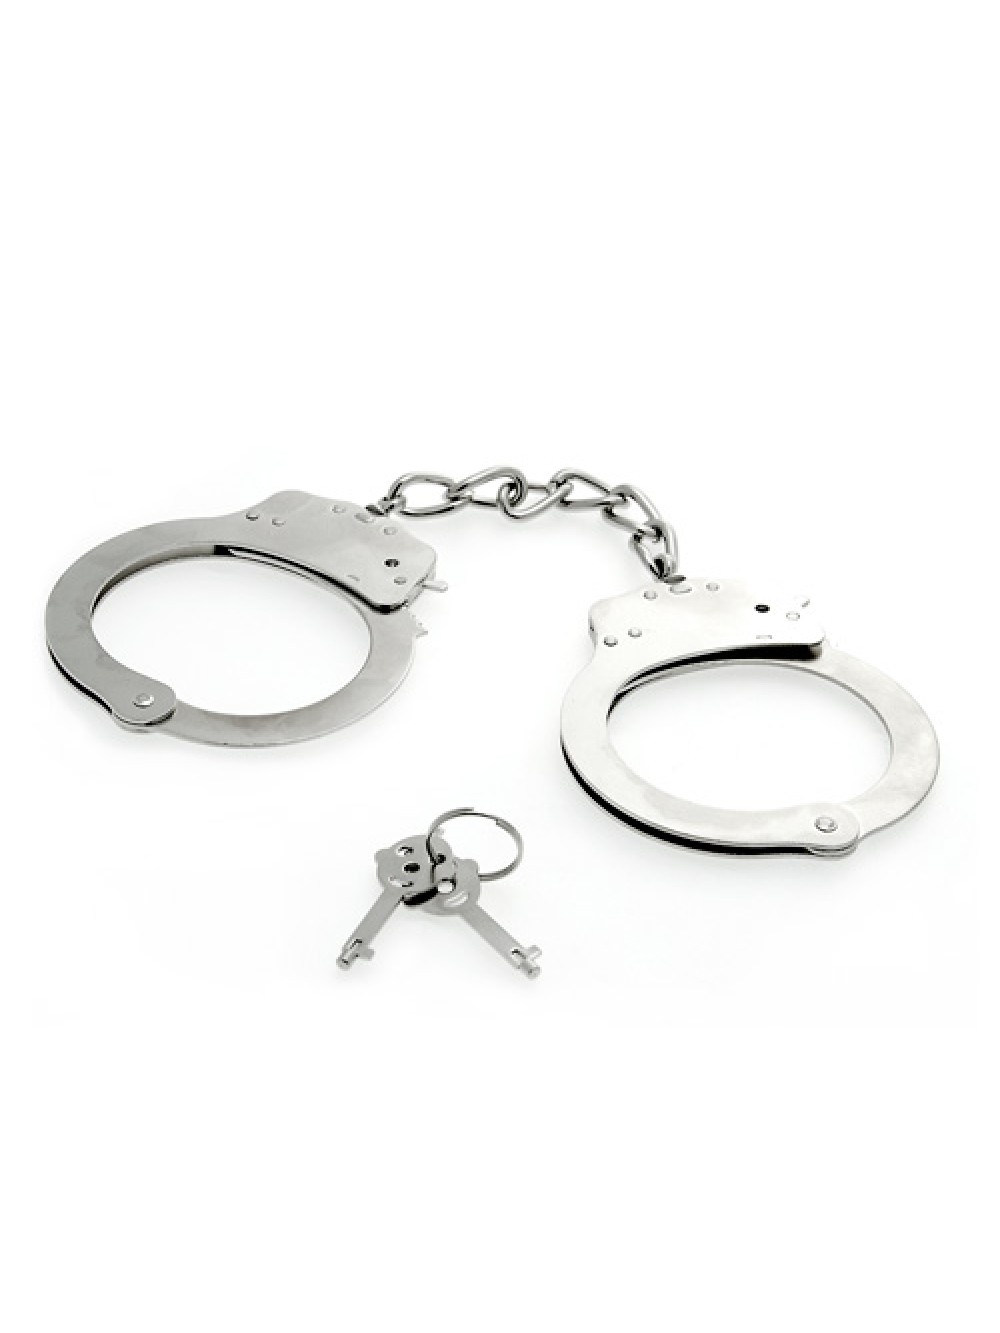 Deluxe Metal Handcuffs 6946689003779